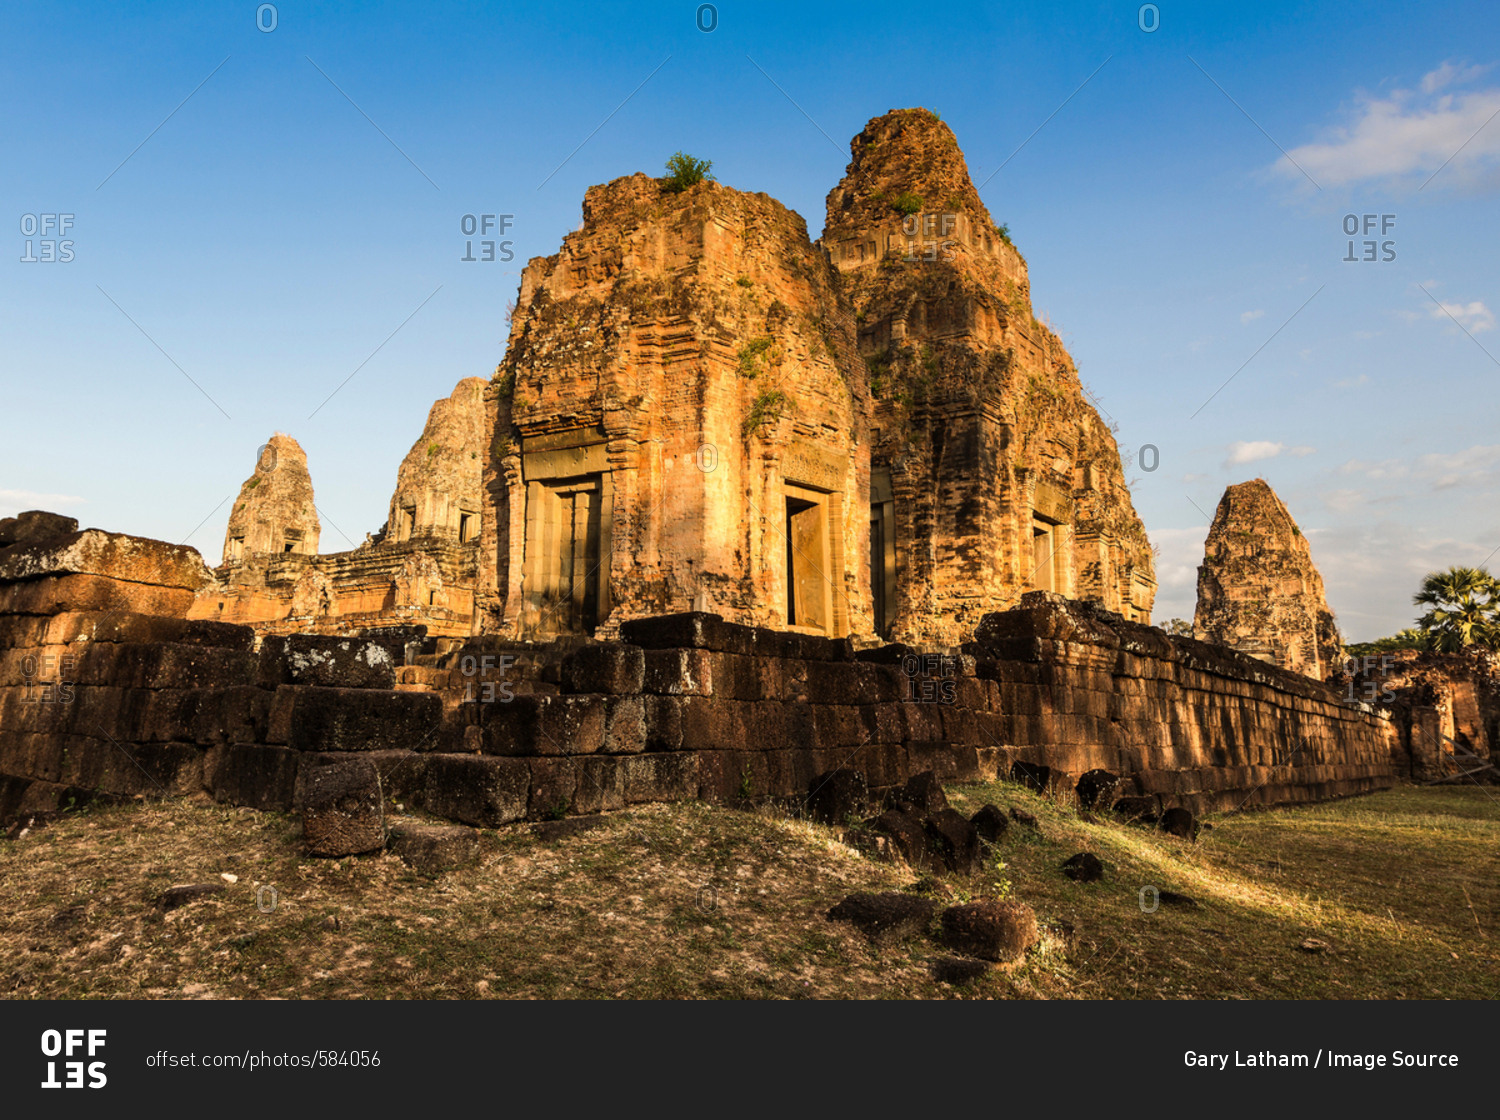 Pre Rup ruins at Angkor Wat, Siem Reap, Cambodia